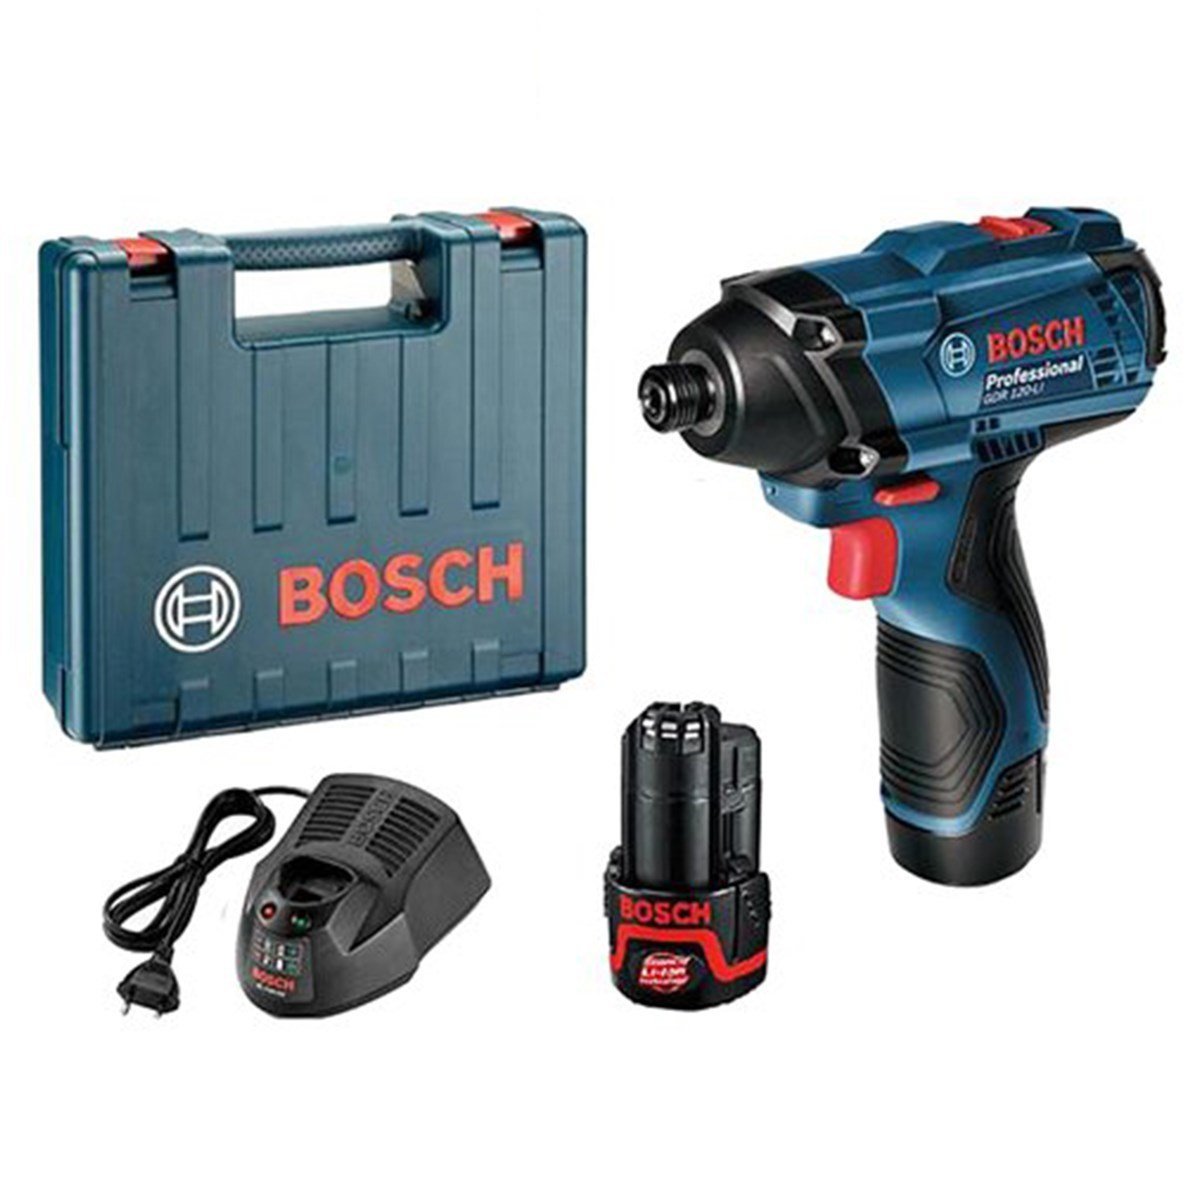 Дрель шуруповерт bosch 12v 30. Аккумуляторный инструмент Bosch 12v professional. Бош GDR 120-li. Гайковёрт аккумуляторный бош 12в. Гайковерт Bosch GDR 120-li.